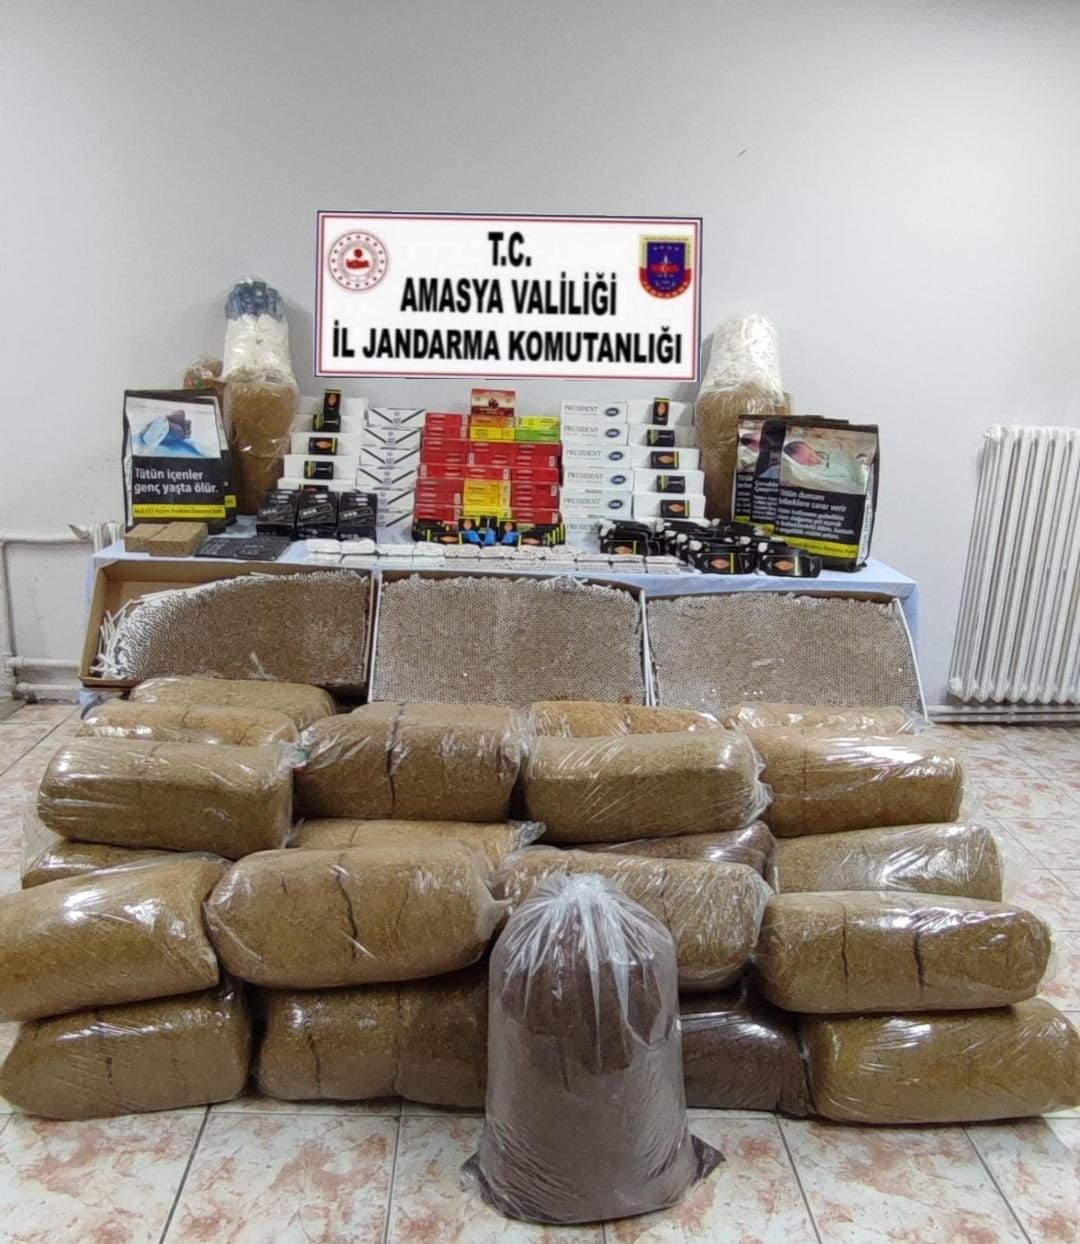 Amasya’da gümrük kaçağı 200 kilogram tütünle 159 bin makaron ele geçirildi